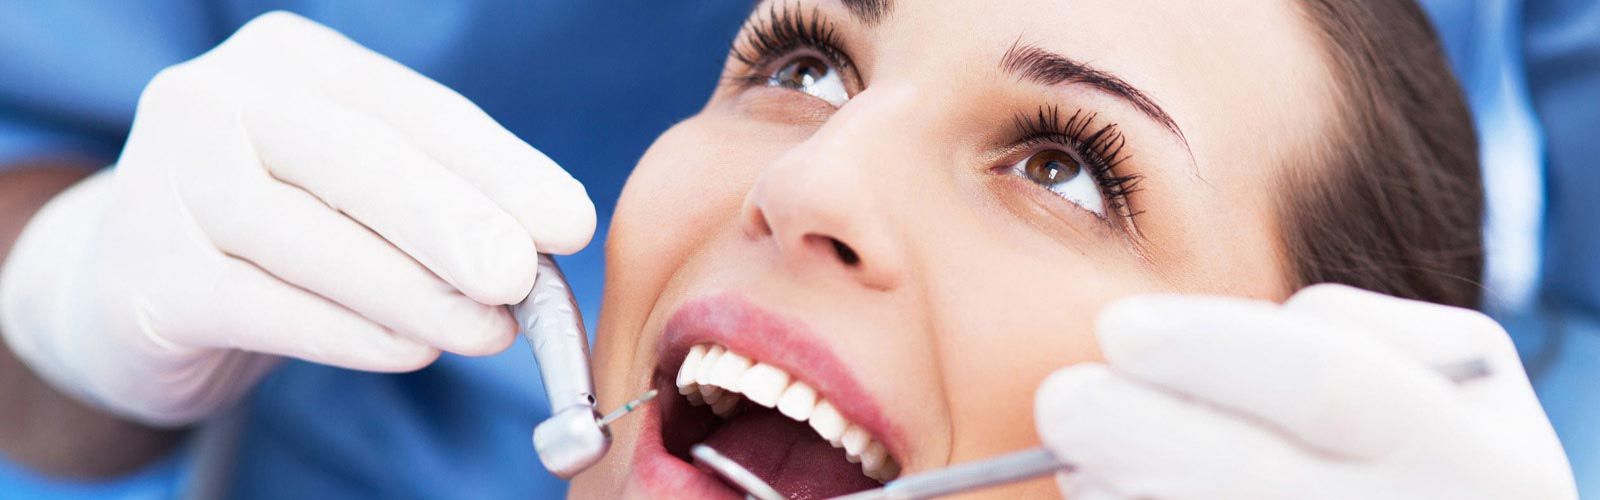 + Q Dientes mujer en consultorio odontológico